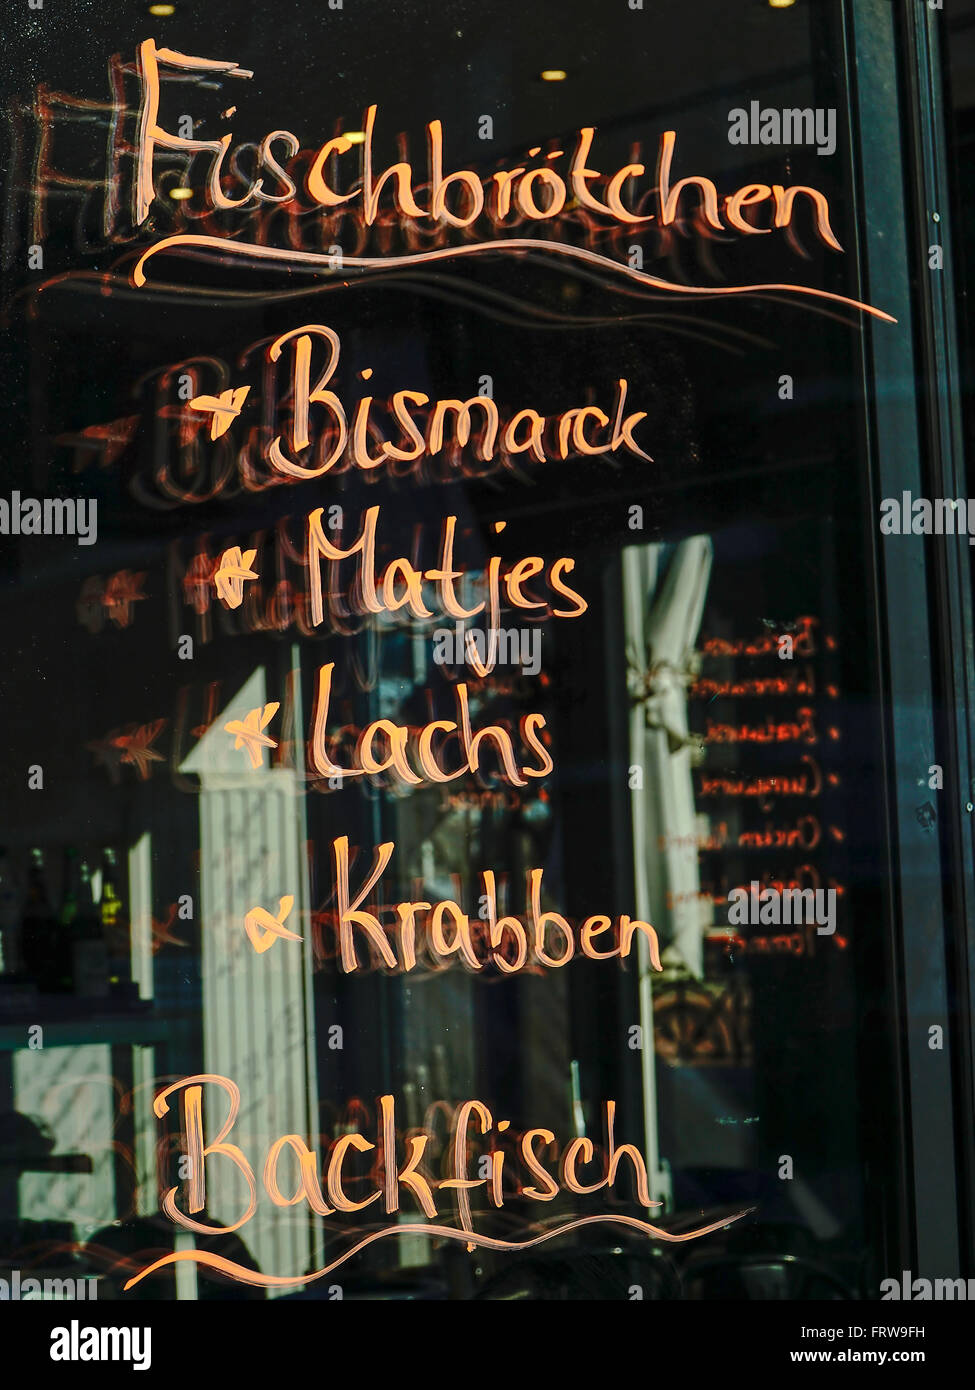 Allemagne, Hambourg, choix d'un snack-bar écrit sur la vitre Banque D'Images